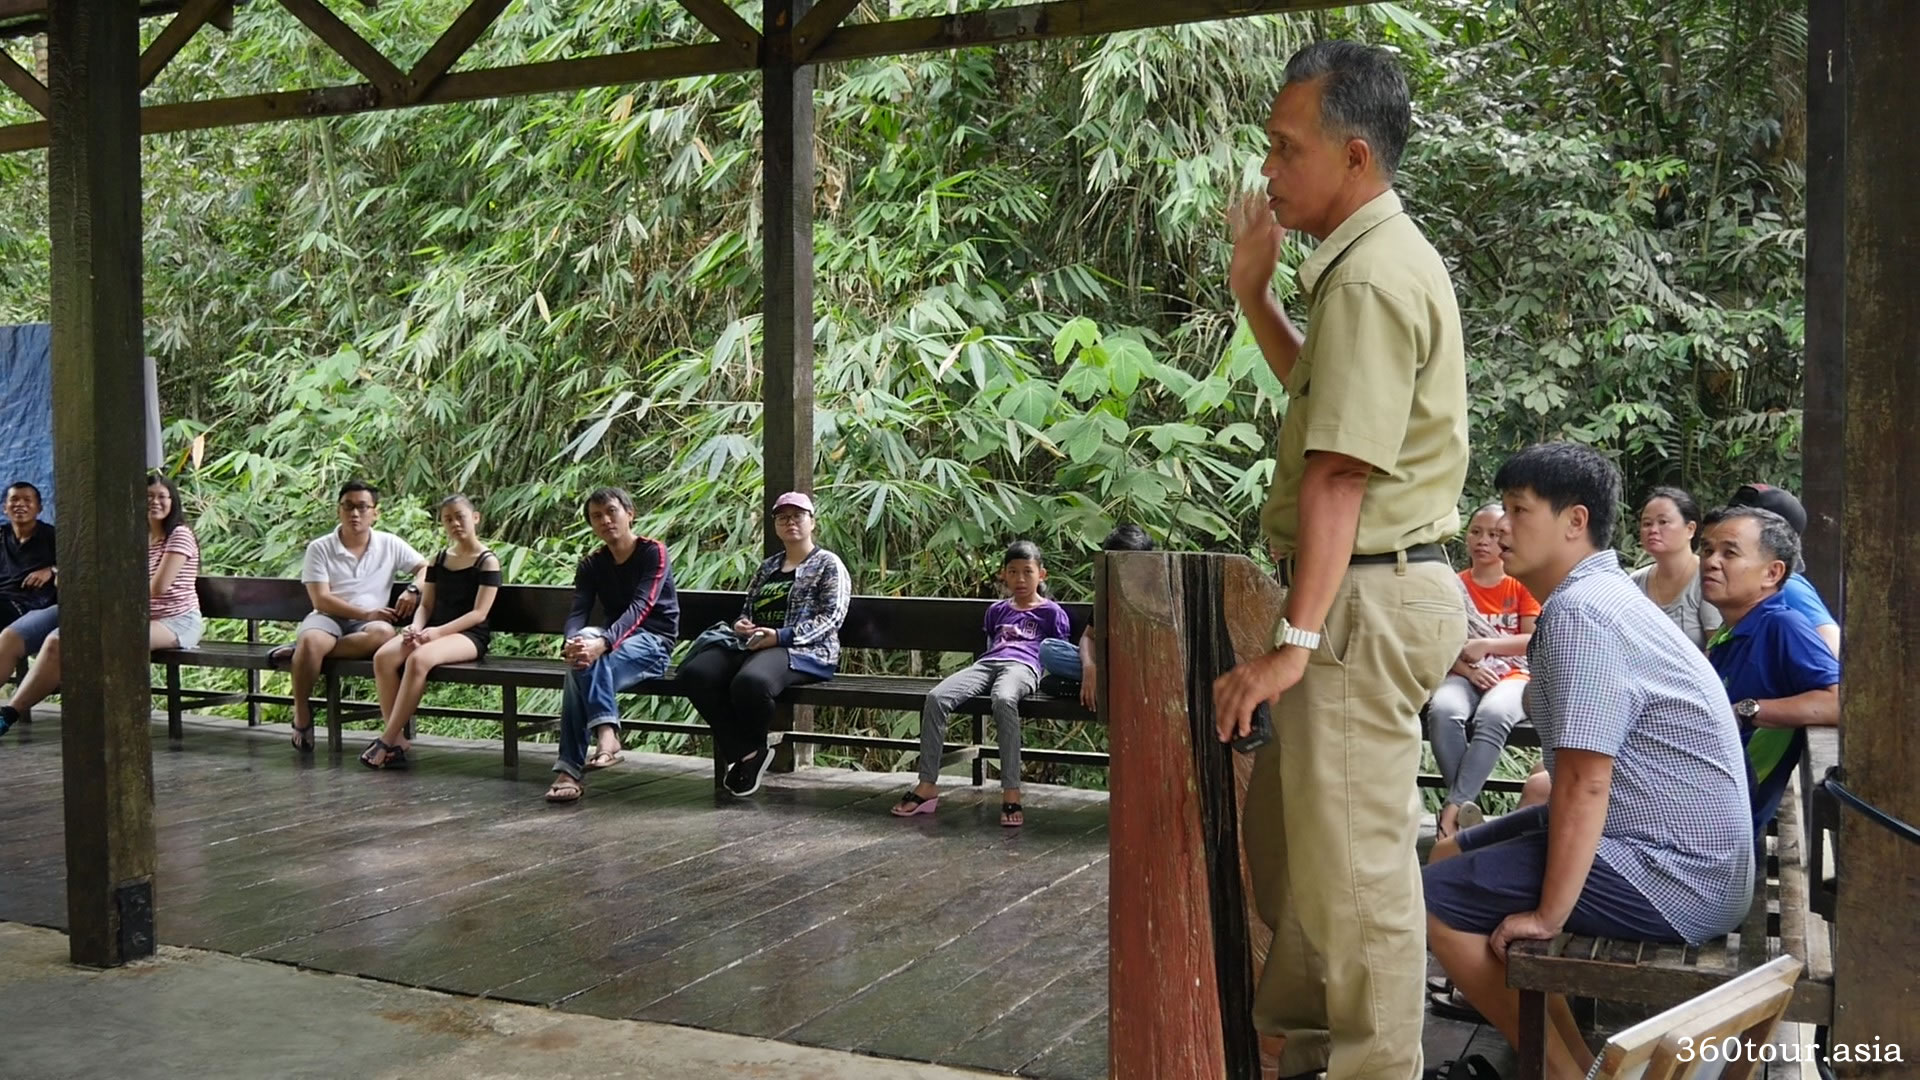 Meet Orangutan Ritchie at Semenggoh Wildlife Center Kuching | 360Tour.Asia